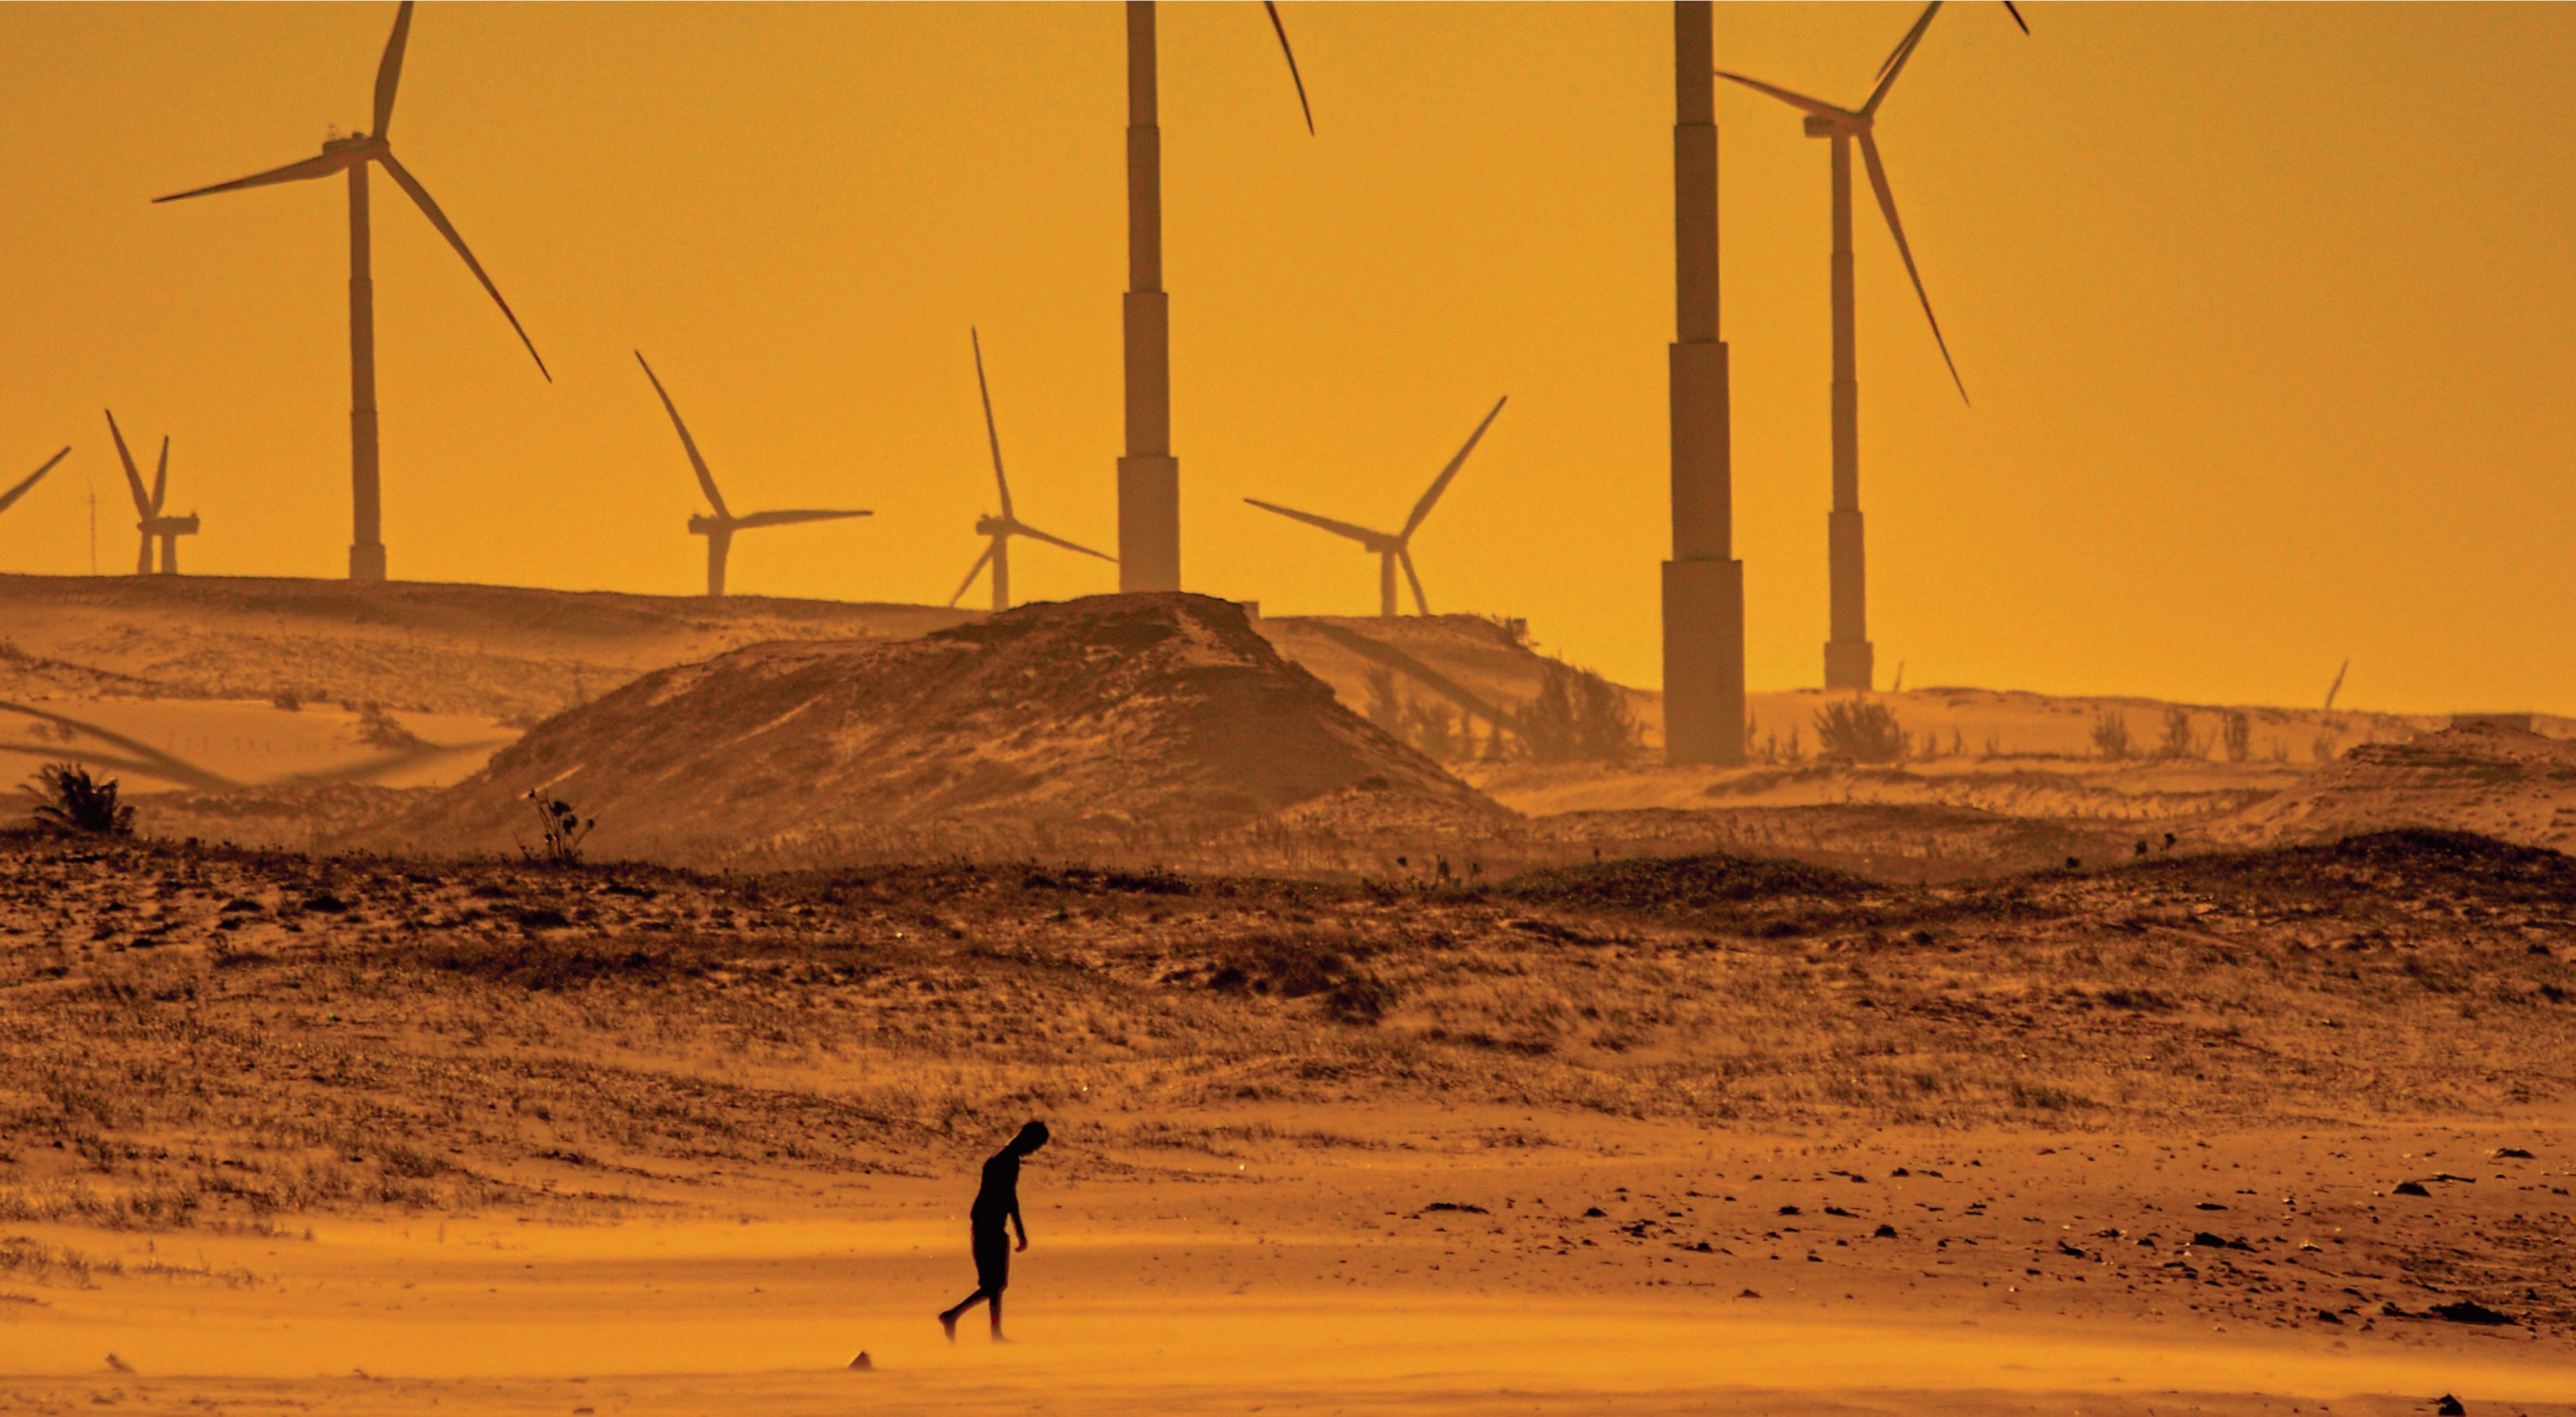 Person walking in desert landscape in front of wind power generators.